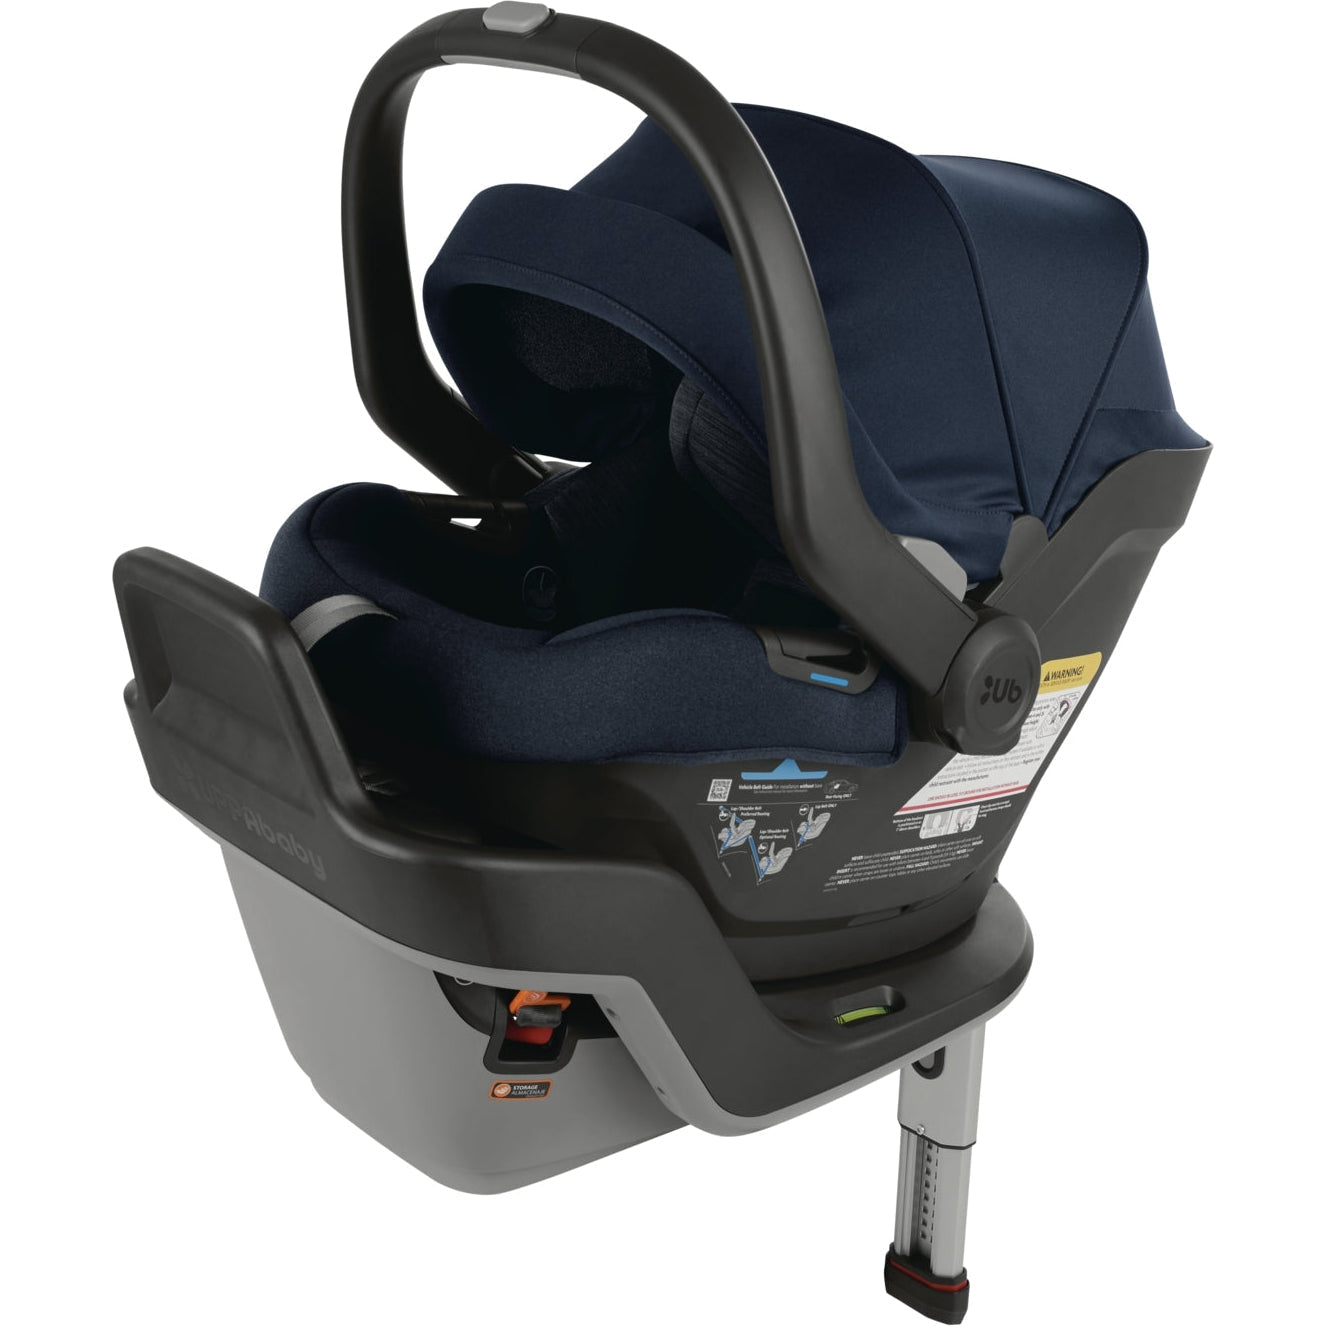 UPPAbaby Mesa Max Infant Car Seat